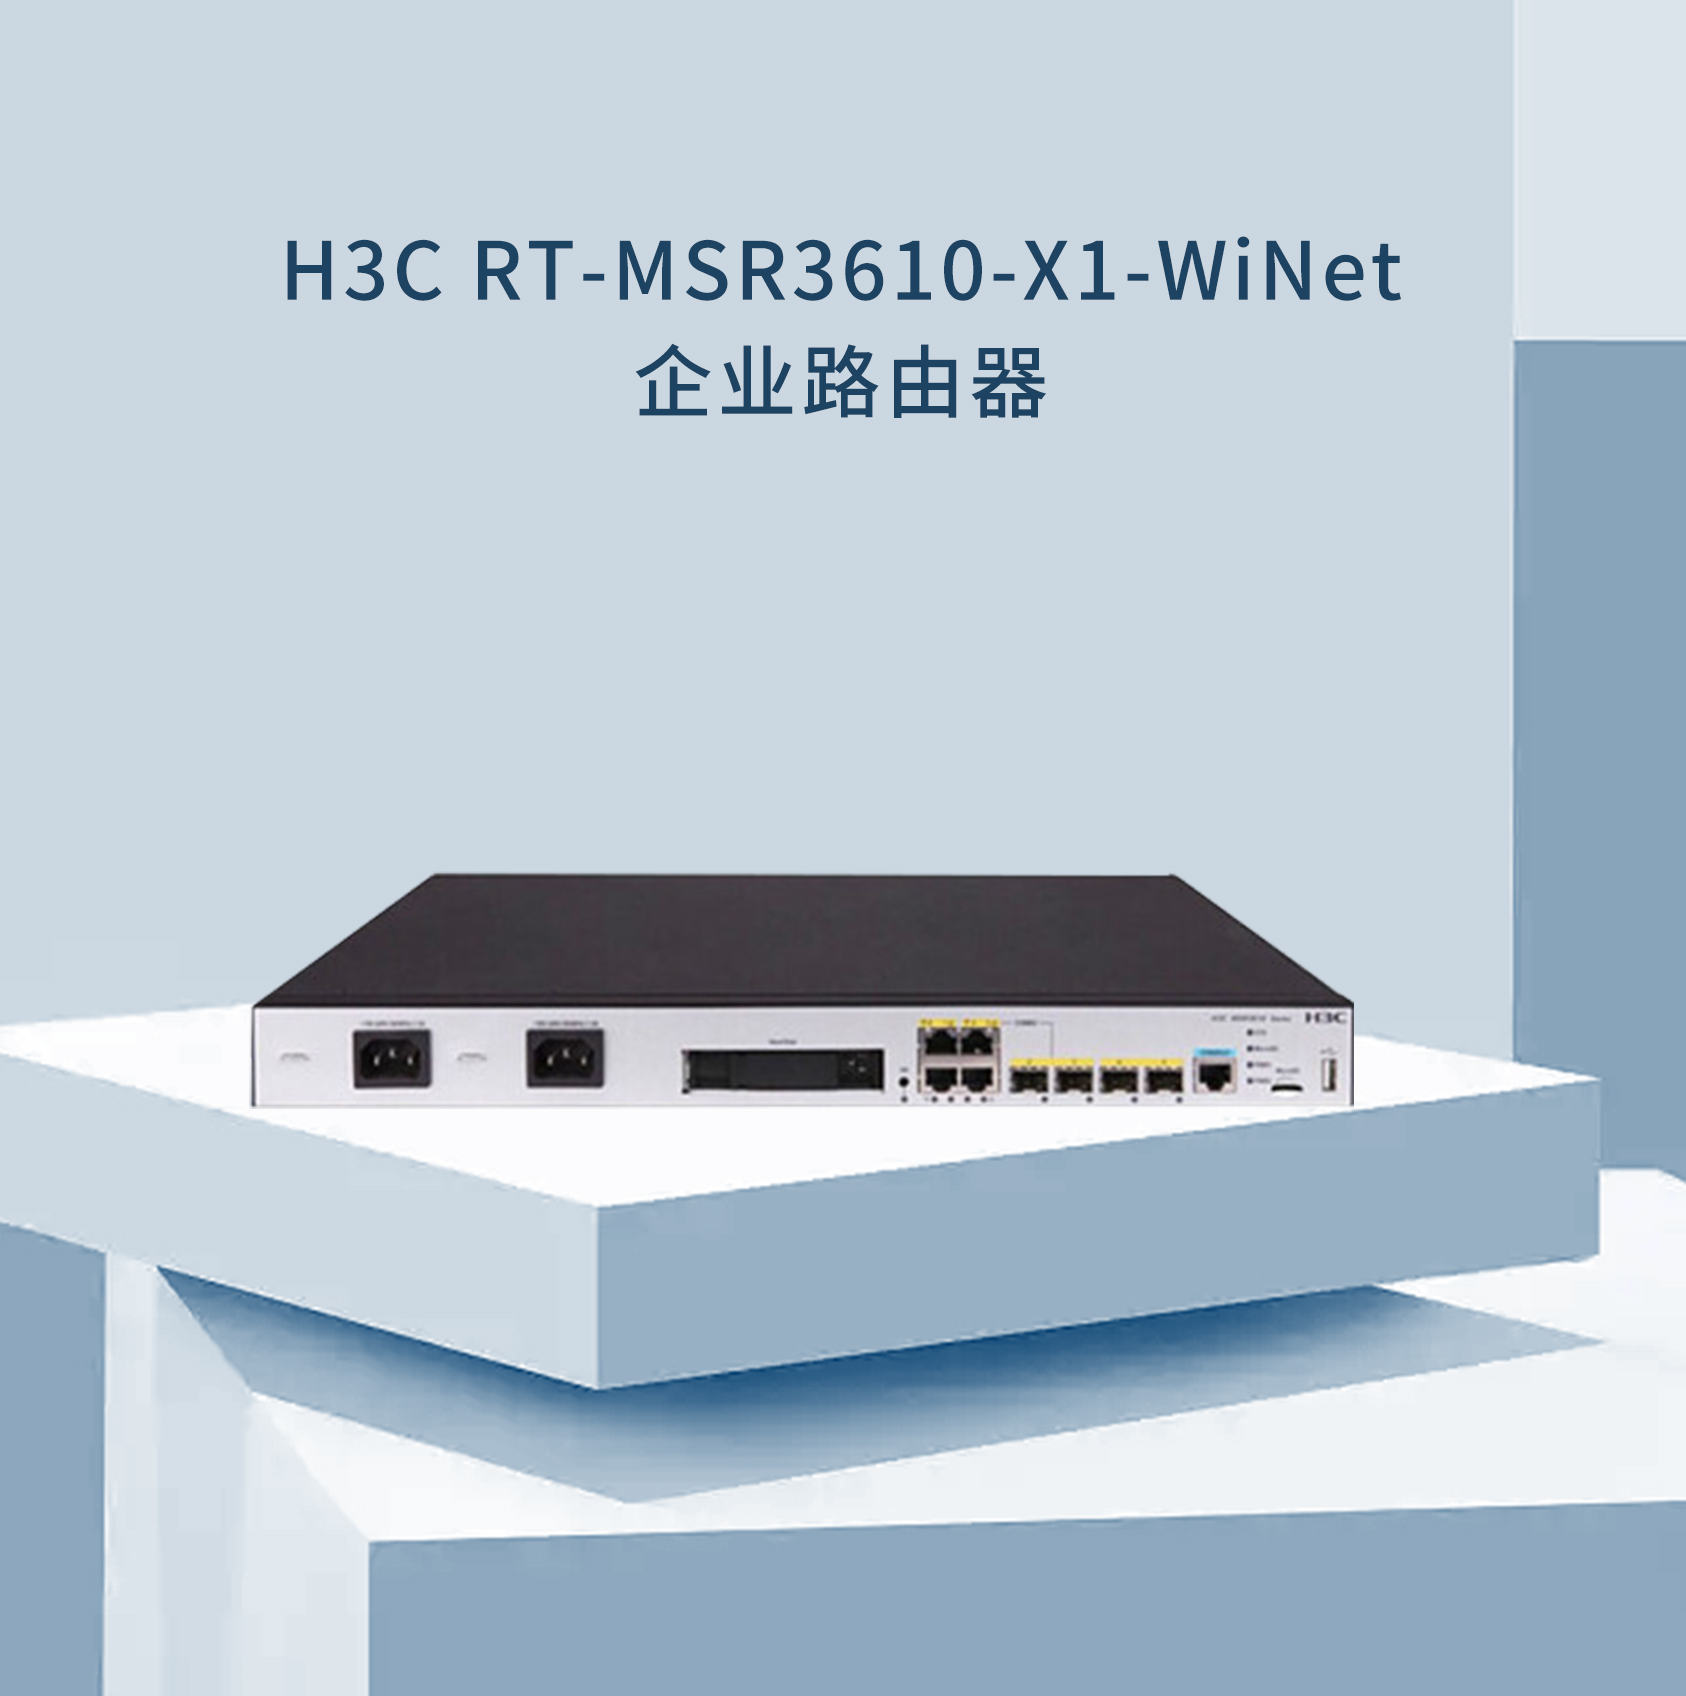 RT-MSR3610-X1-WiNet